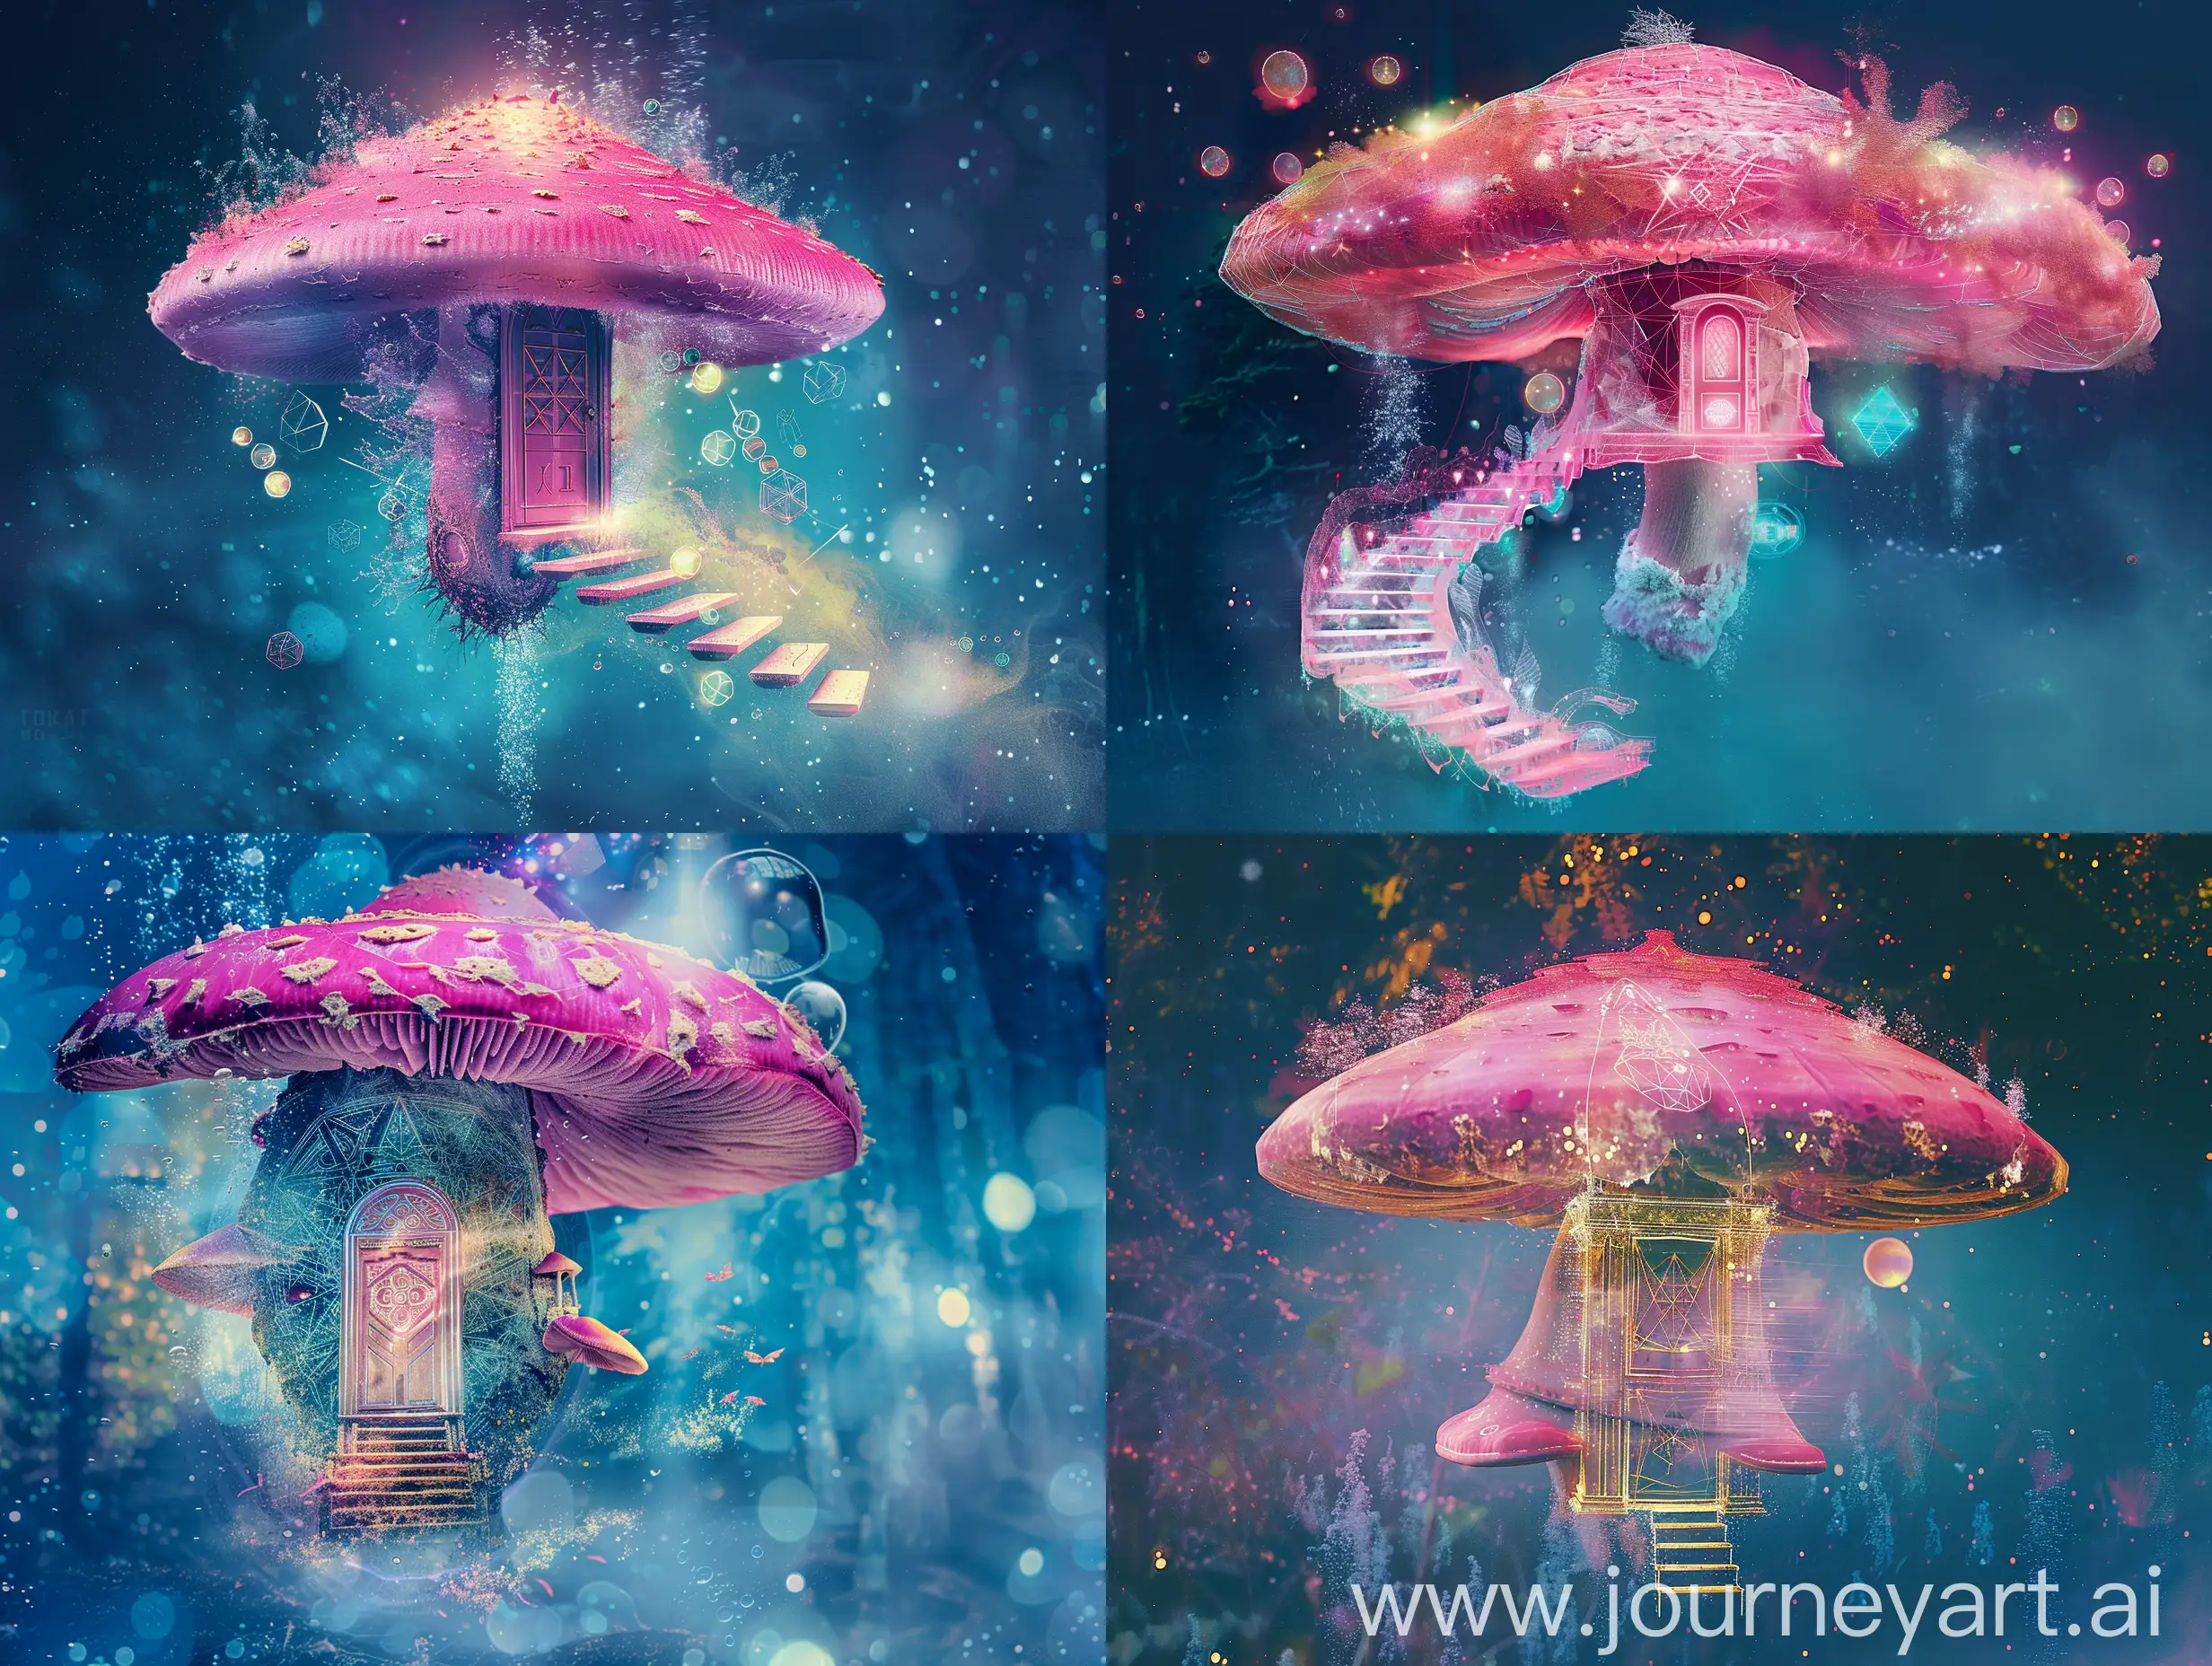 Enchanting-Giant-Pink-Mushroom-Cosmos-Portal-Tim-Burton-Style-Xray-Fantasy